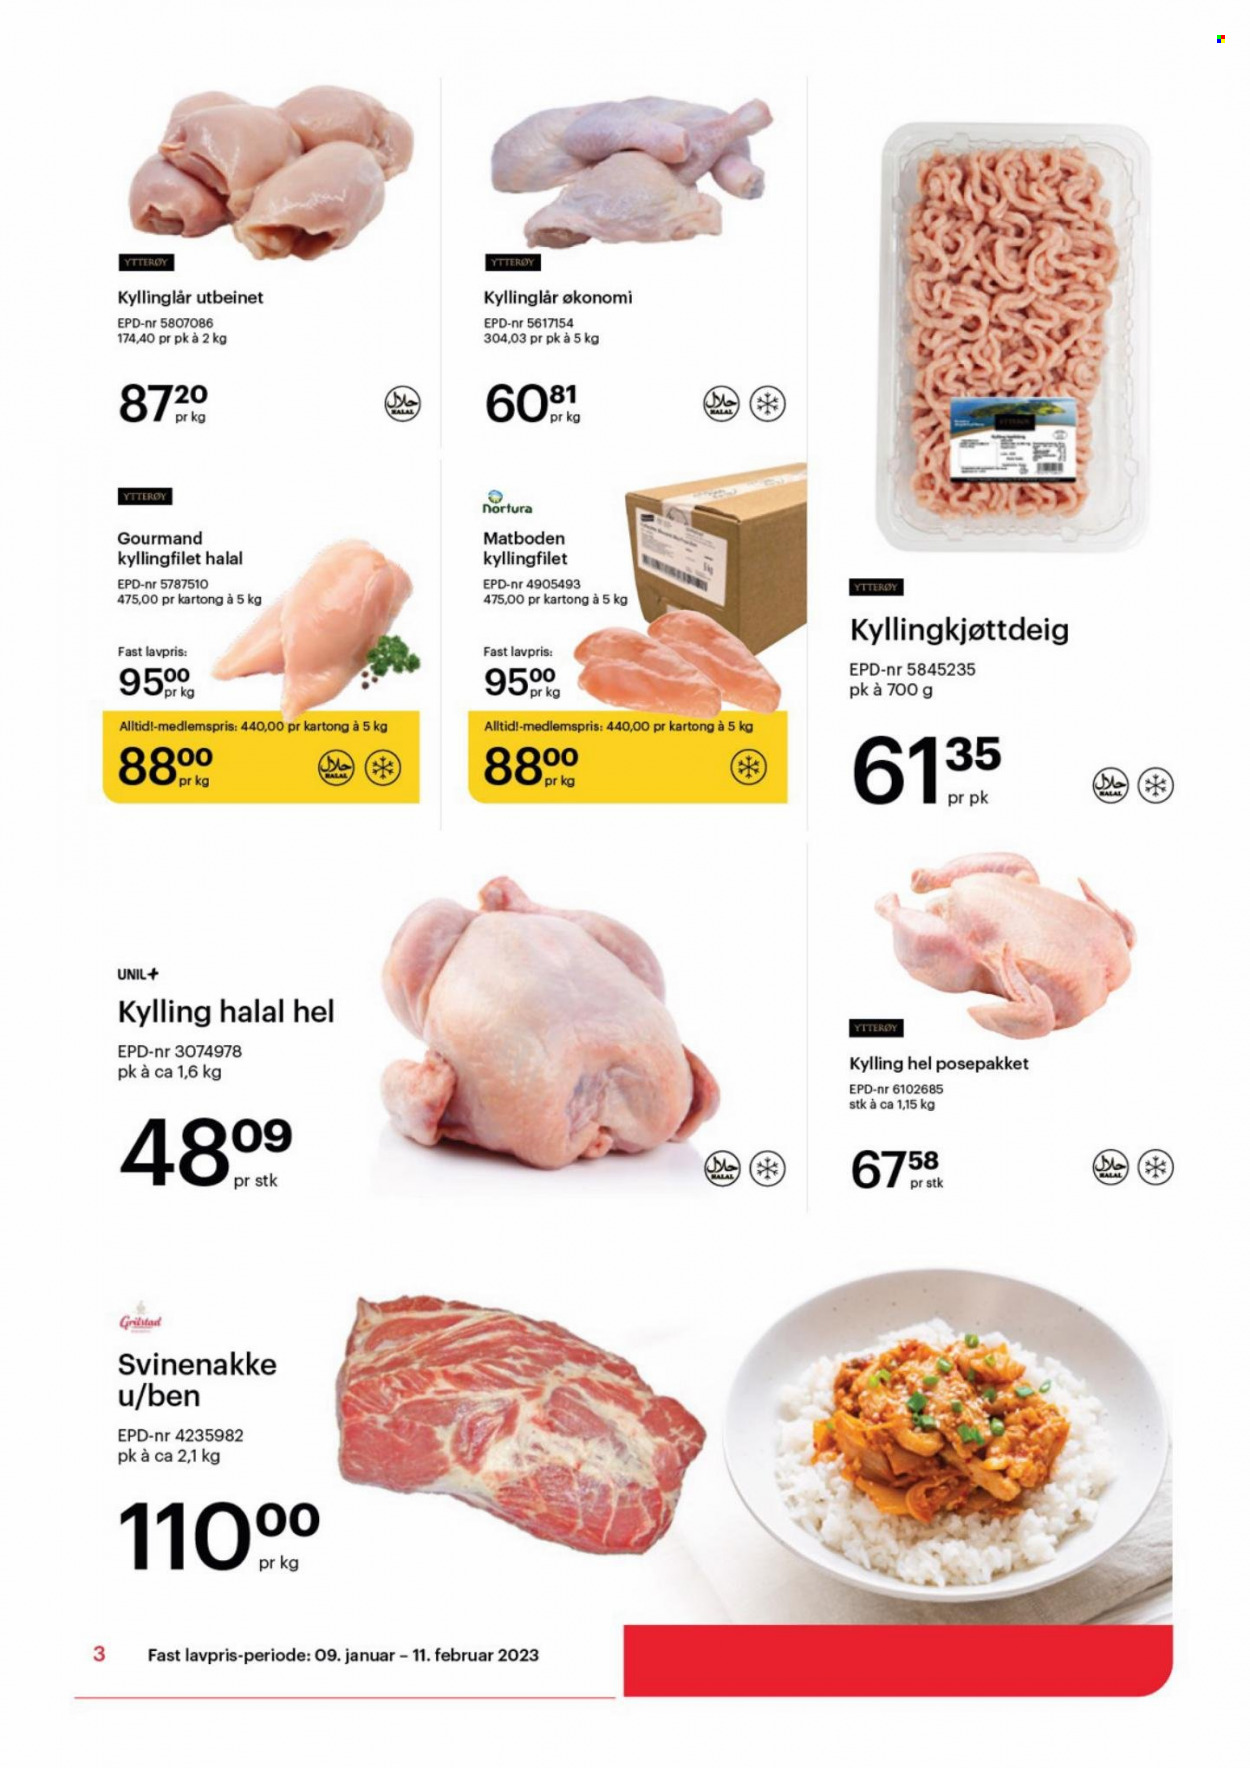 thumbnail - Kundeavis Storcash - 9.1.2023 - 11.2.2023 - Produkter fra tilbudsaviser - hel kylling, kyllingfilet, kyllinglår, kyllingkjøtt, kjøttdeig, kyllingkjøttdeig, svinenakke. Side 3.